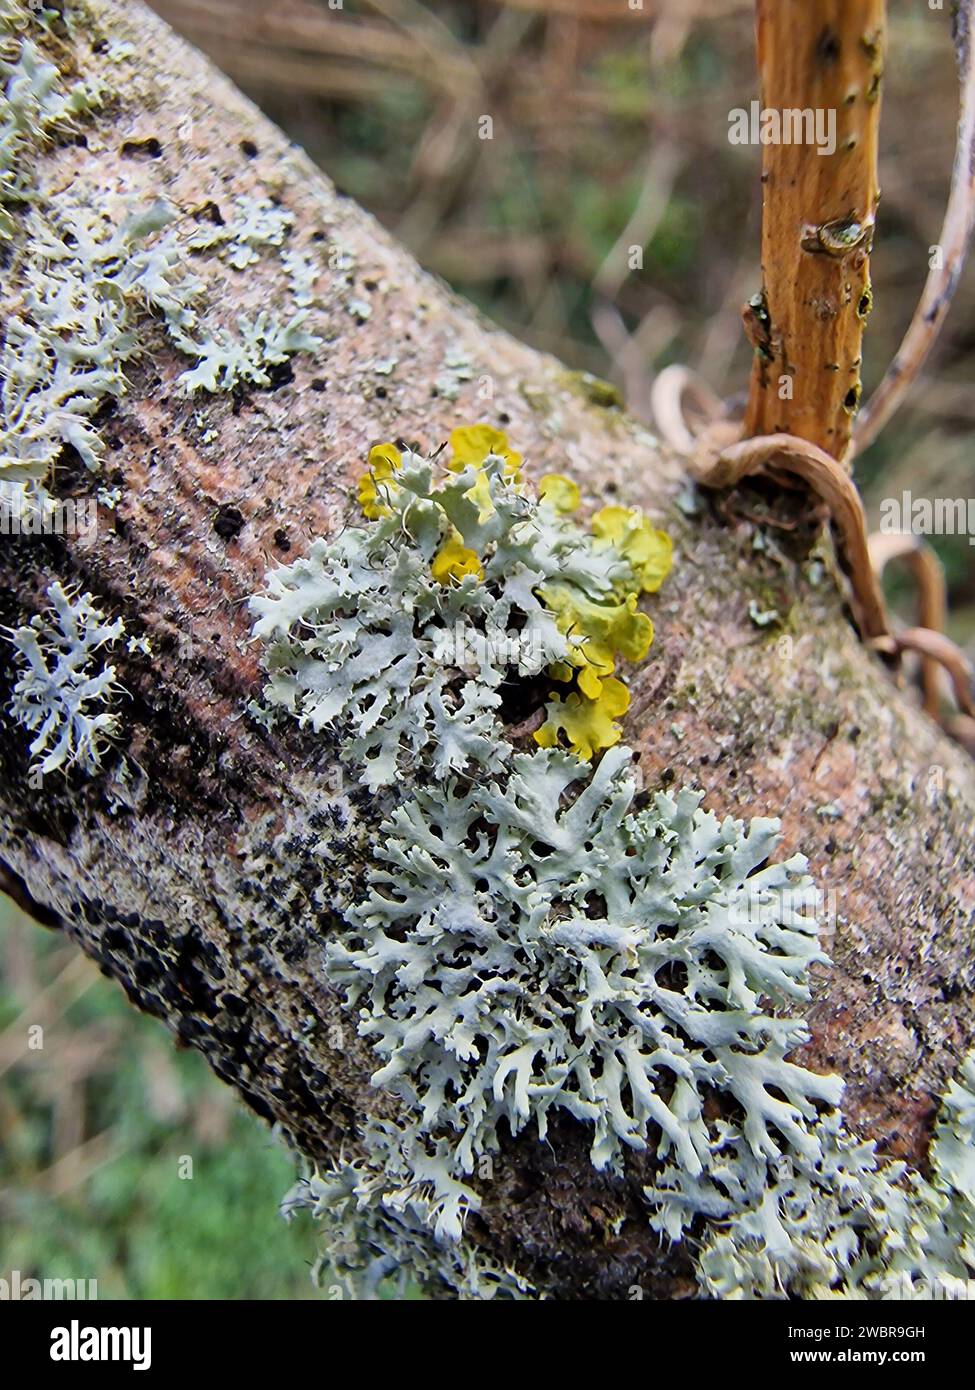 Lichen  Physcia tenella on wooden pole Stock Photo